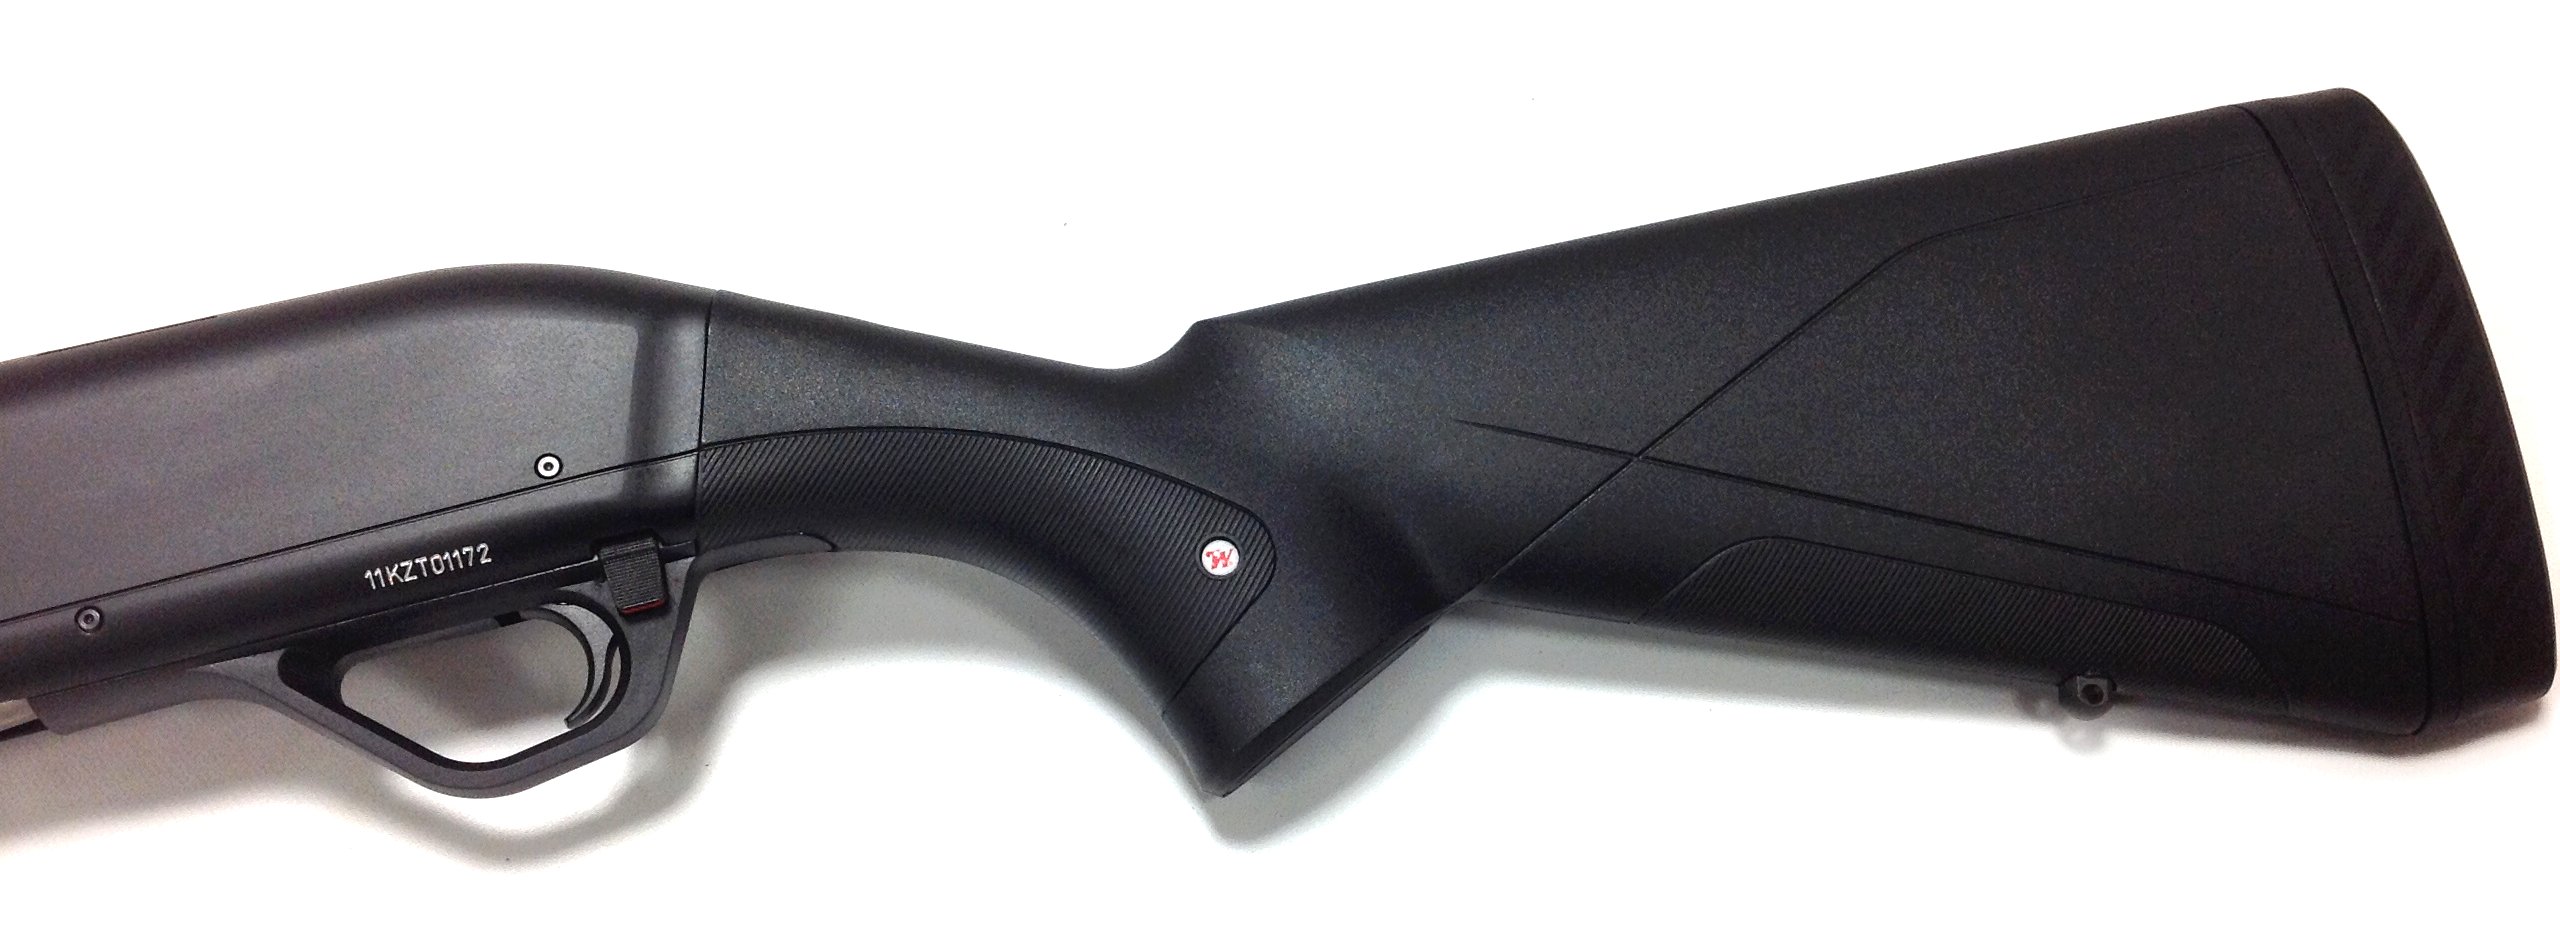 Winchester SX4 Composite Black Semi automatic shotgun